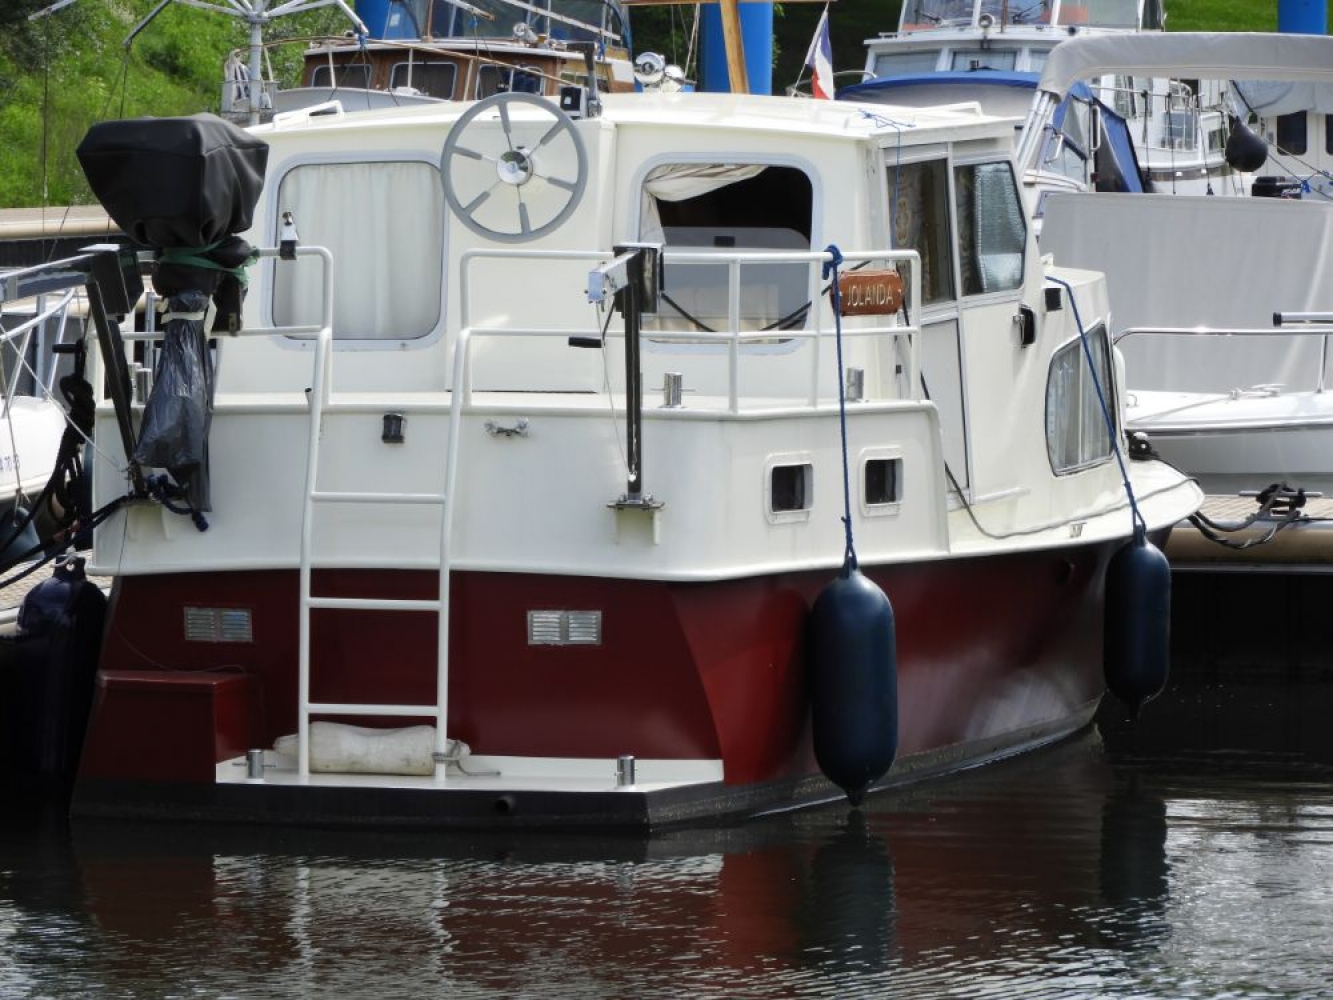 gebrauchte yachten holland